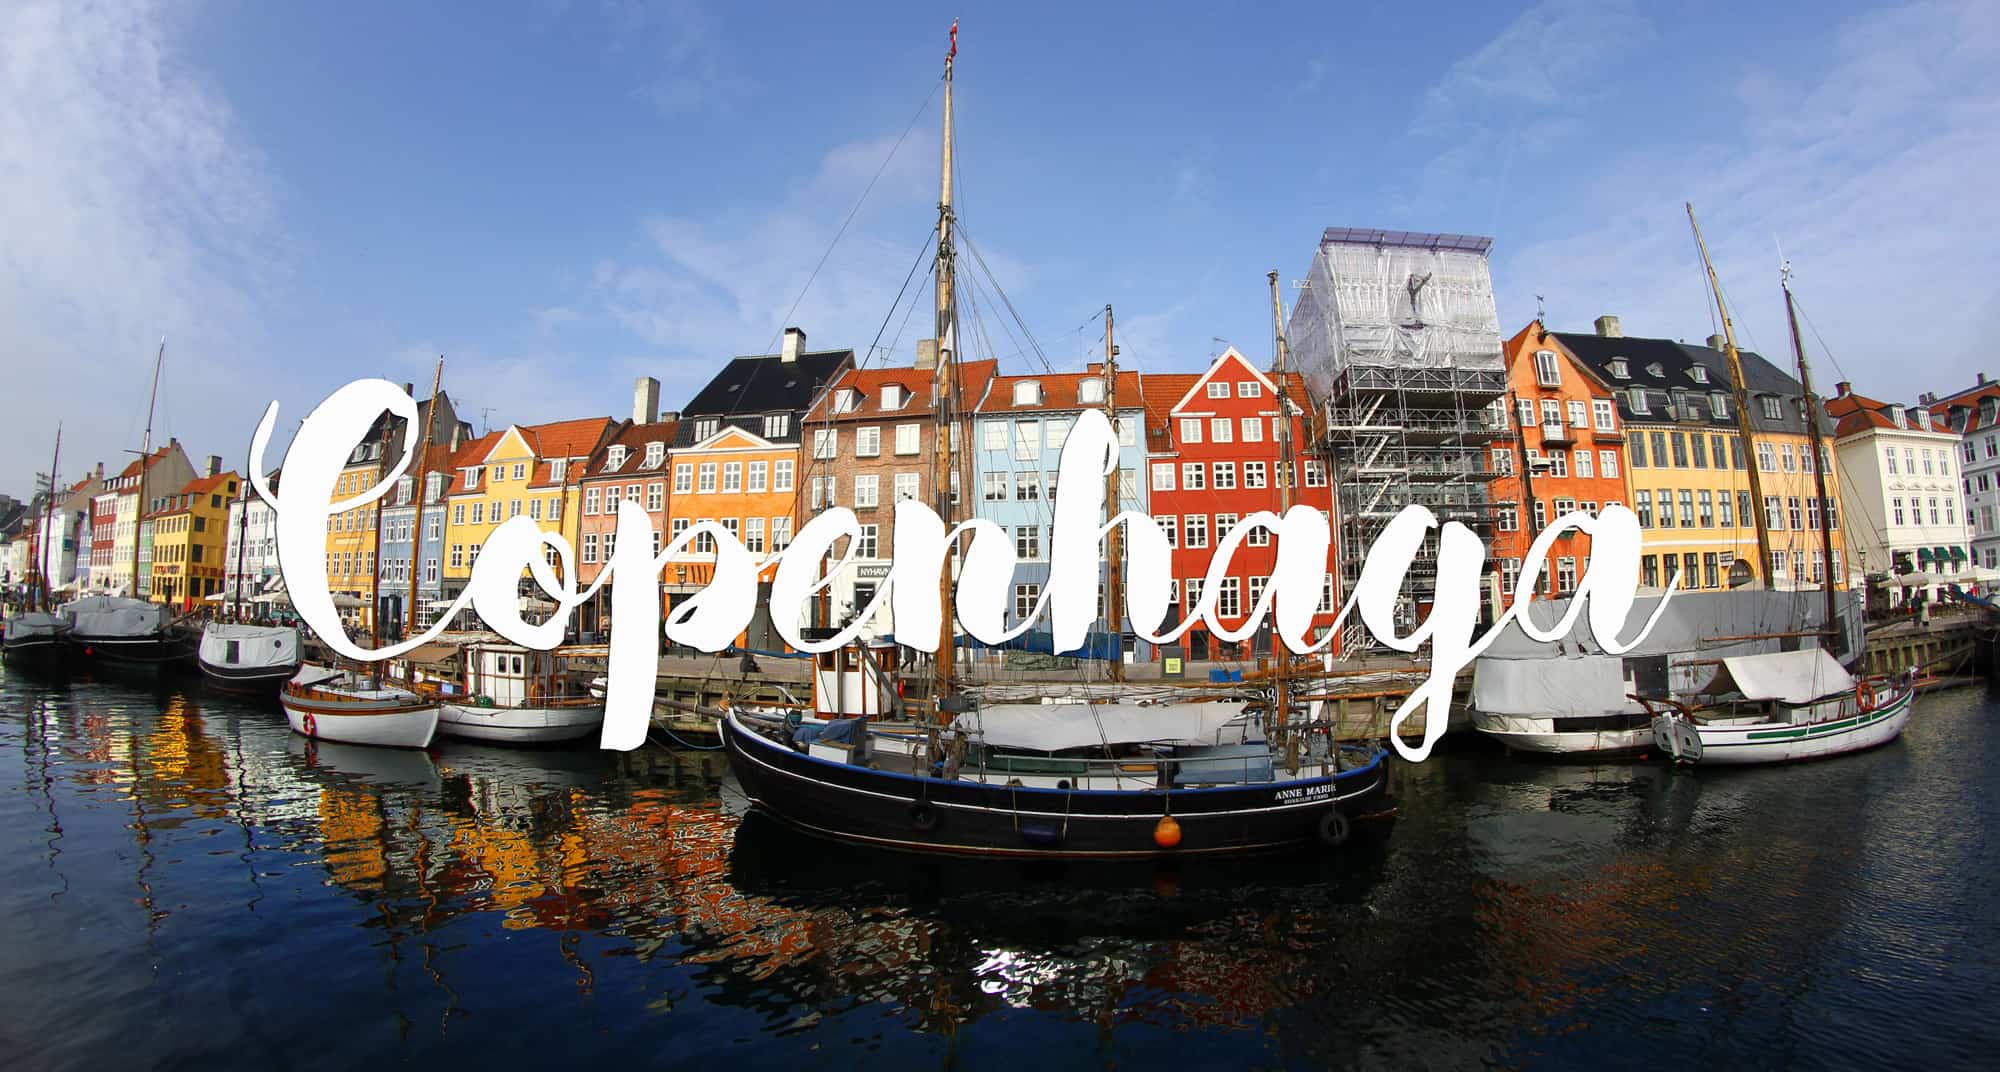 DICAS de viagem para visitar COPENHAGA (com indicação de hotéis e hostels) | Dinamarca